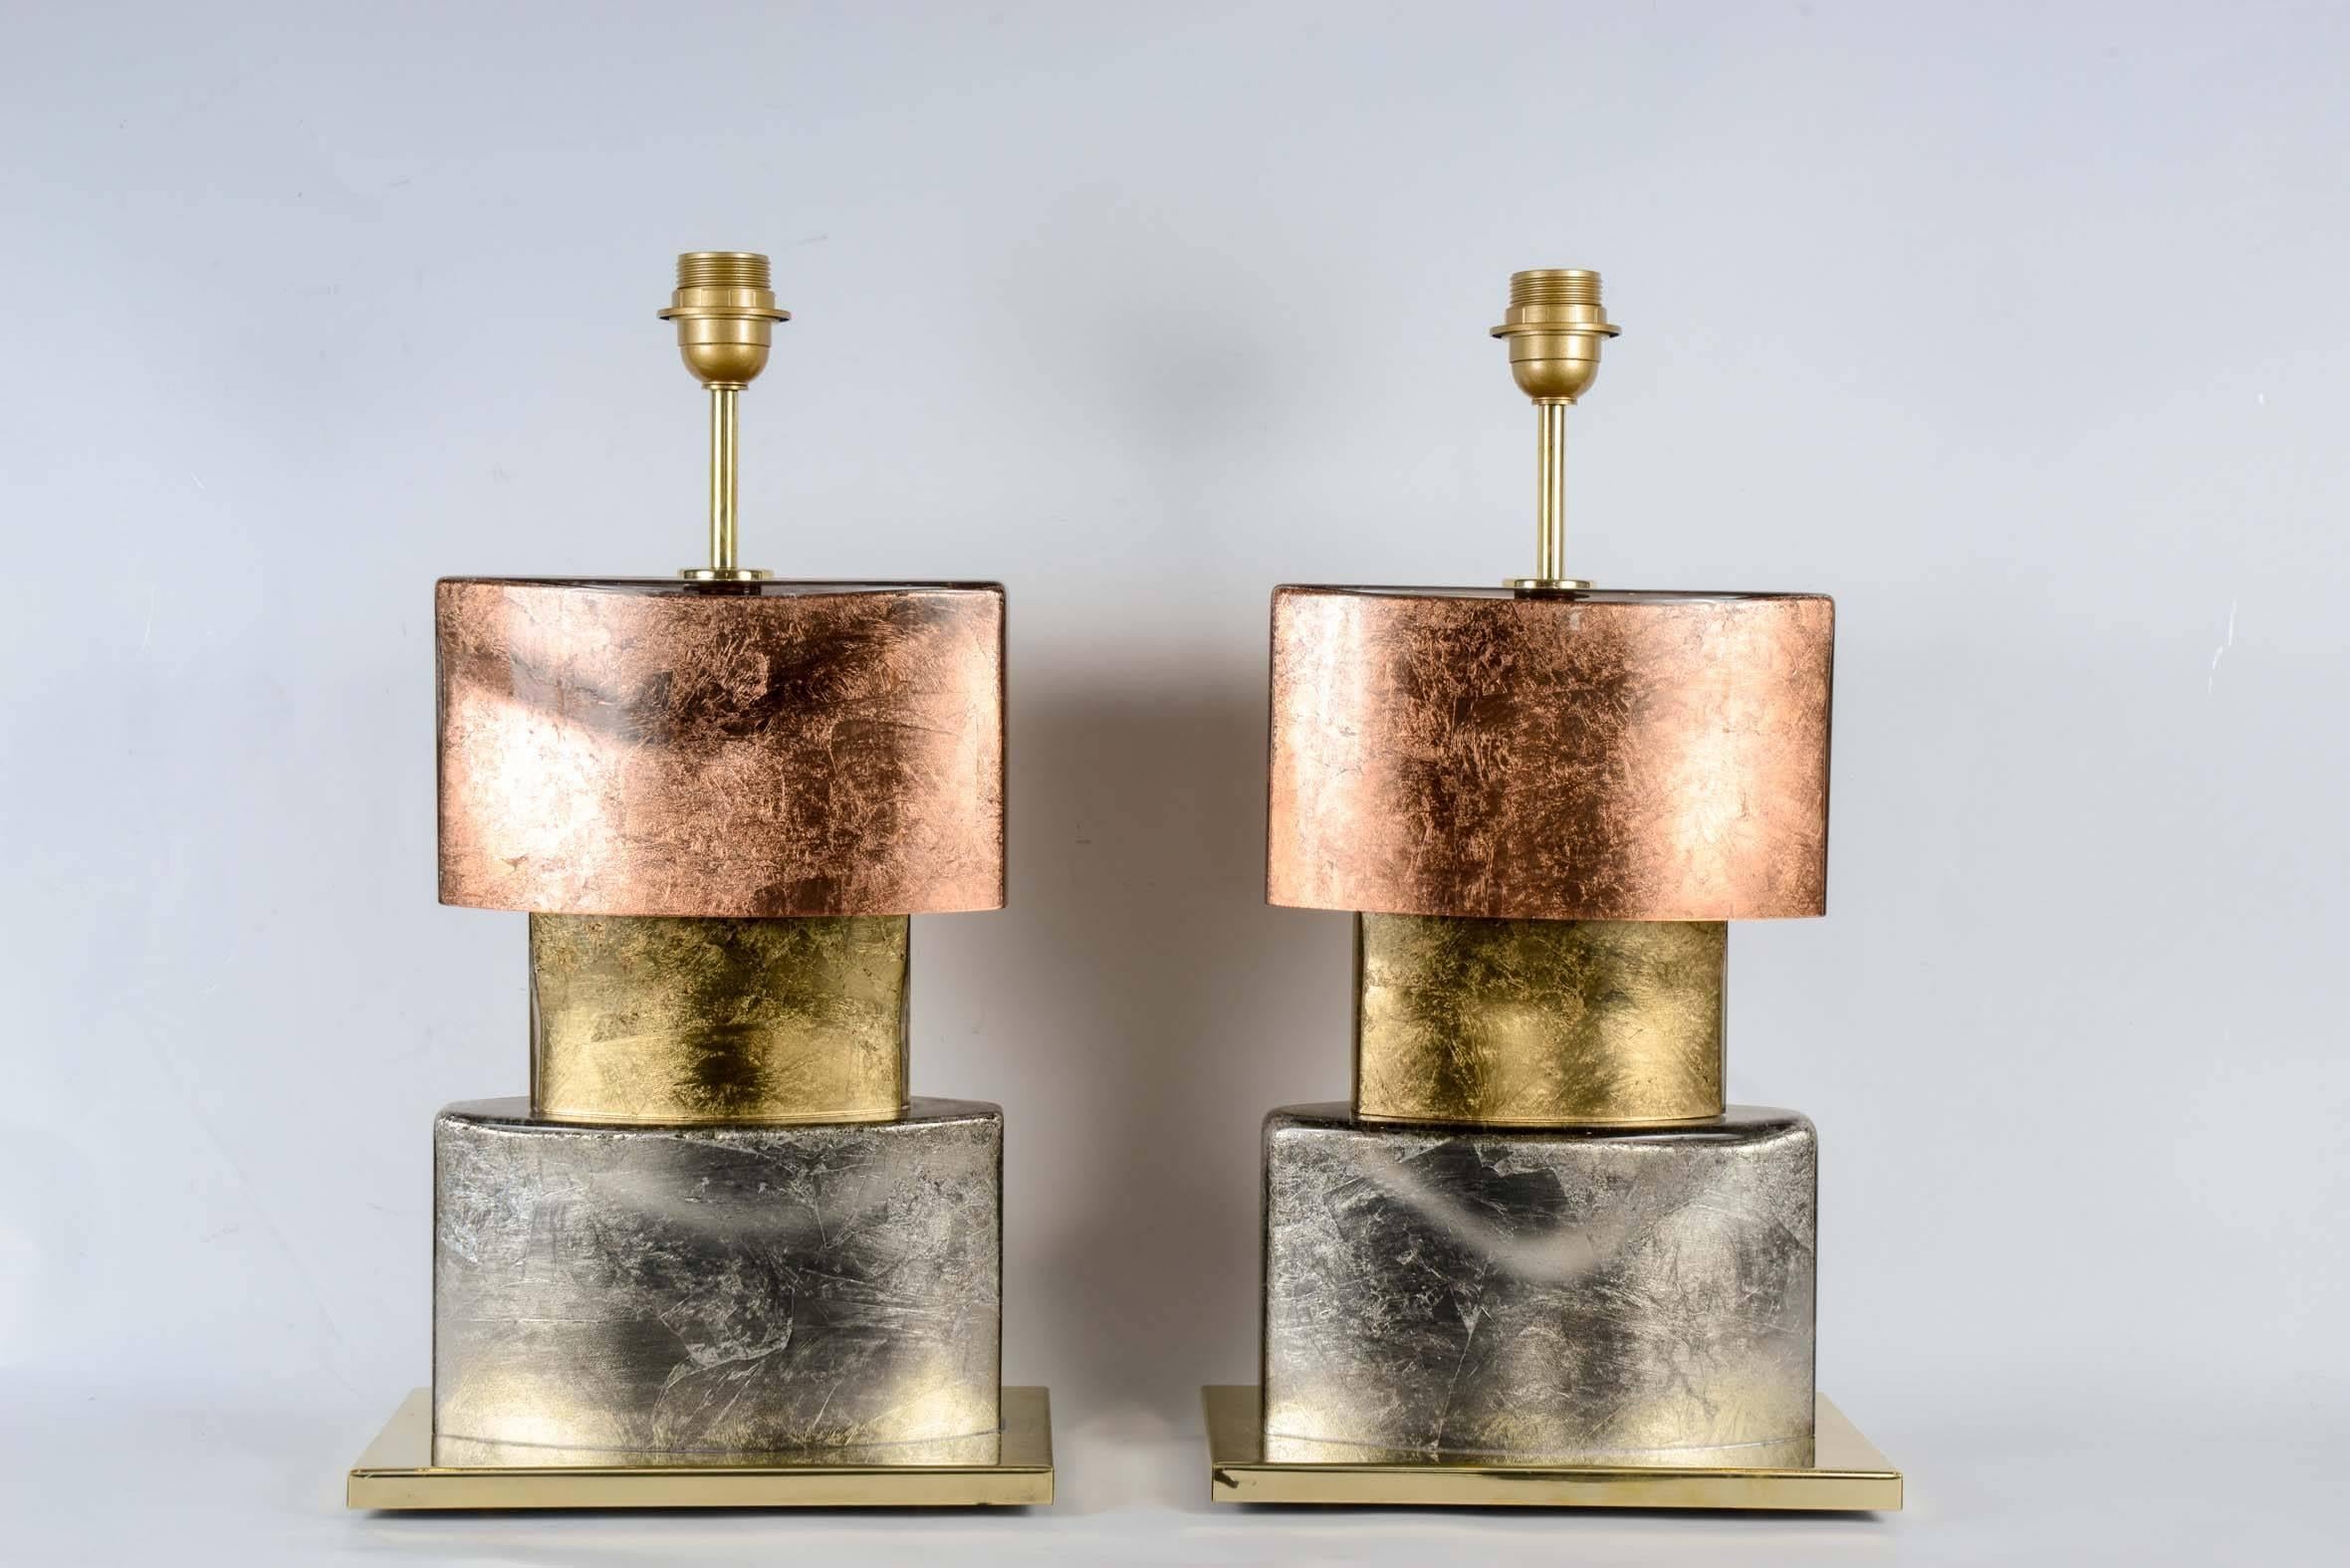 Paar Lampen mit Silber-, Kupfer- und Goldblättern.
Perfekter Zustand.
Maße ohne Schirm angegeben
Kein Schatten enthalten